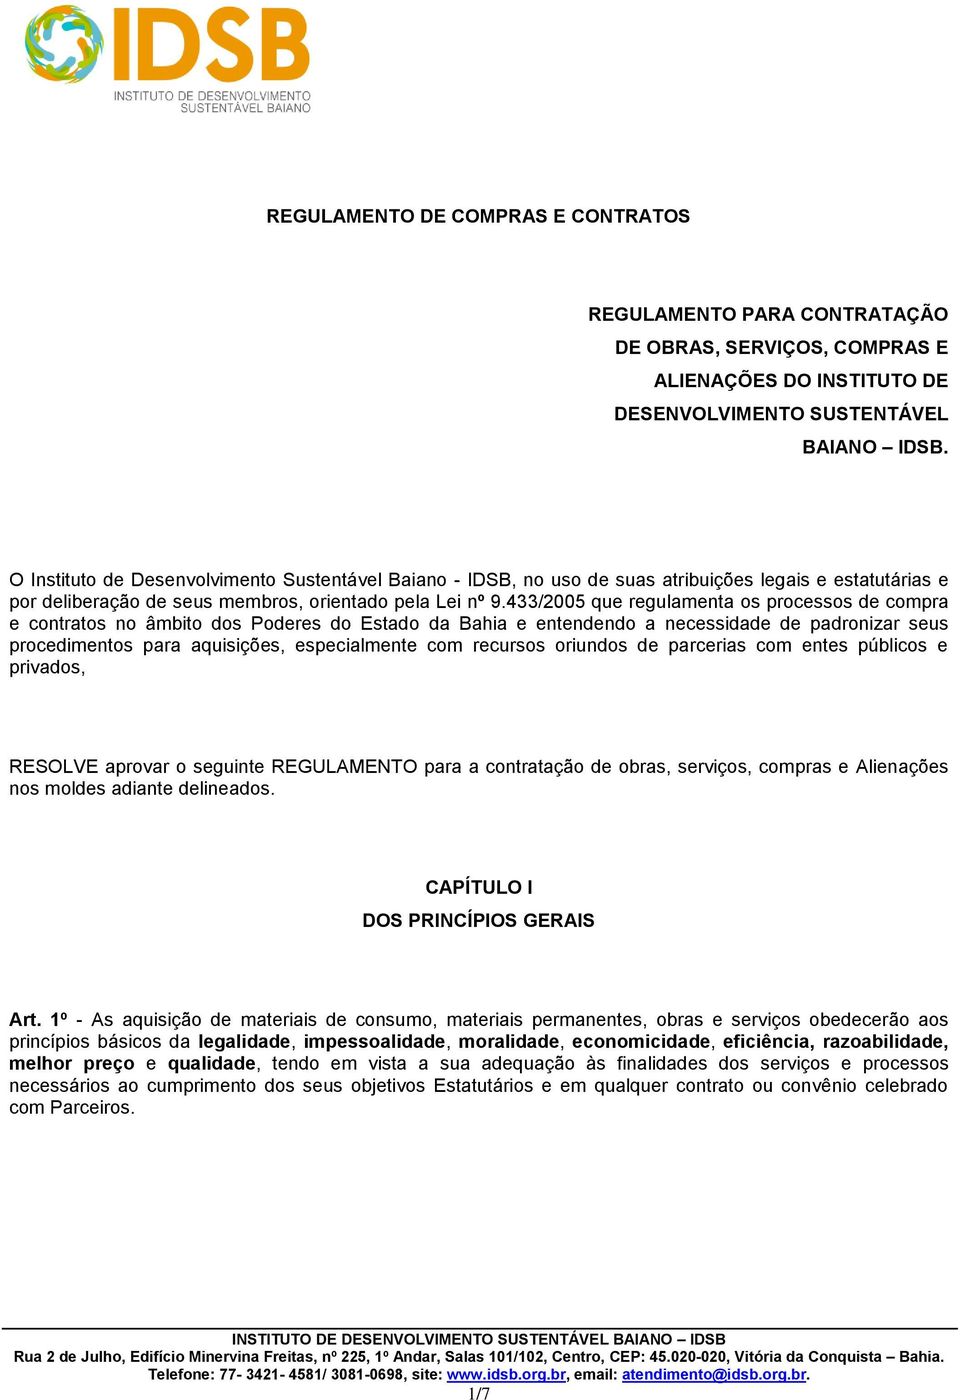 433/2005 que regulamenta os processos de compra e contratos no âmbito dos Poderes do Estado da Bahia e entendendo a necessidade de padronizar seus procedimentos para aquisições, especialmente com